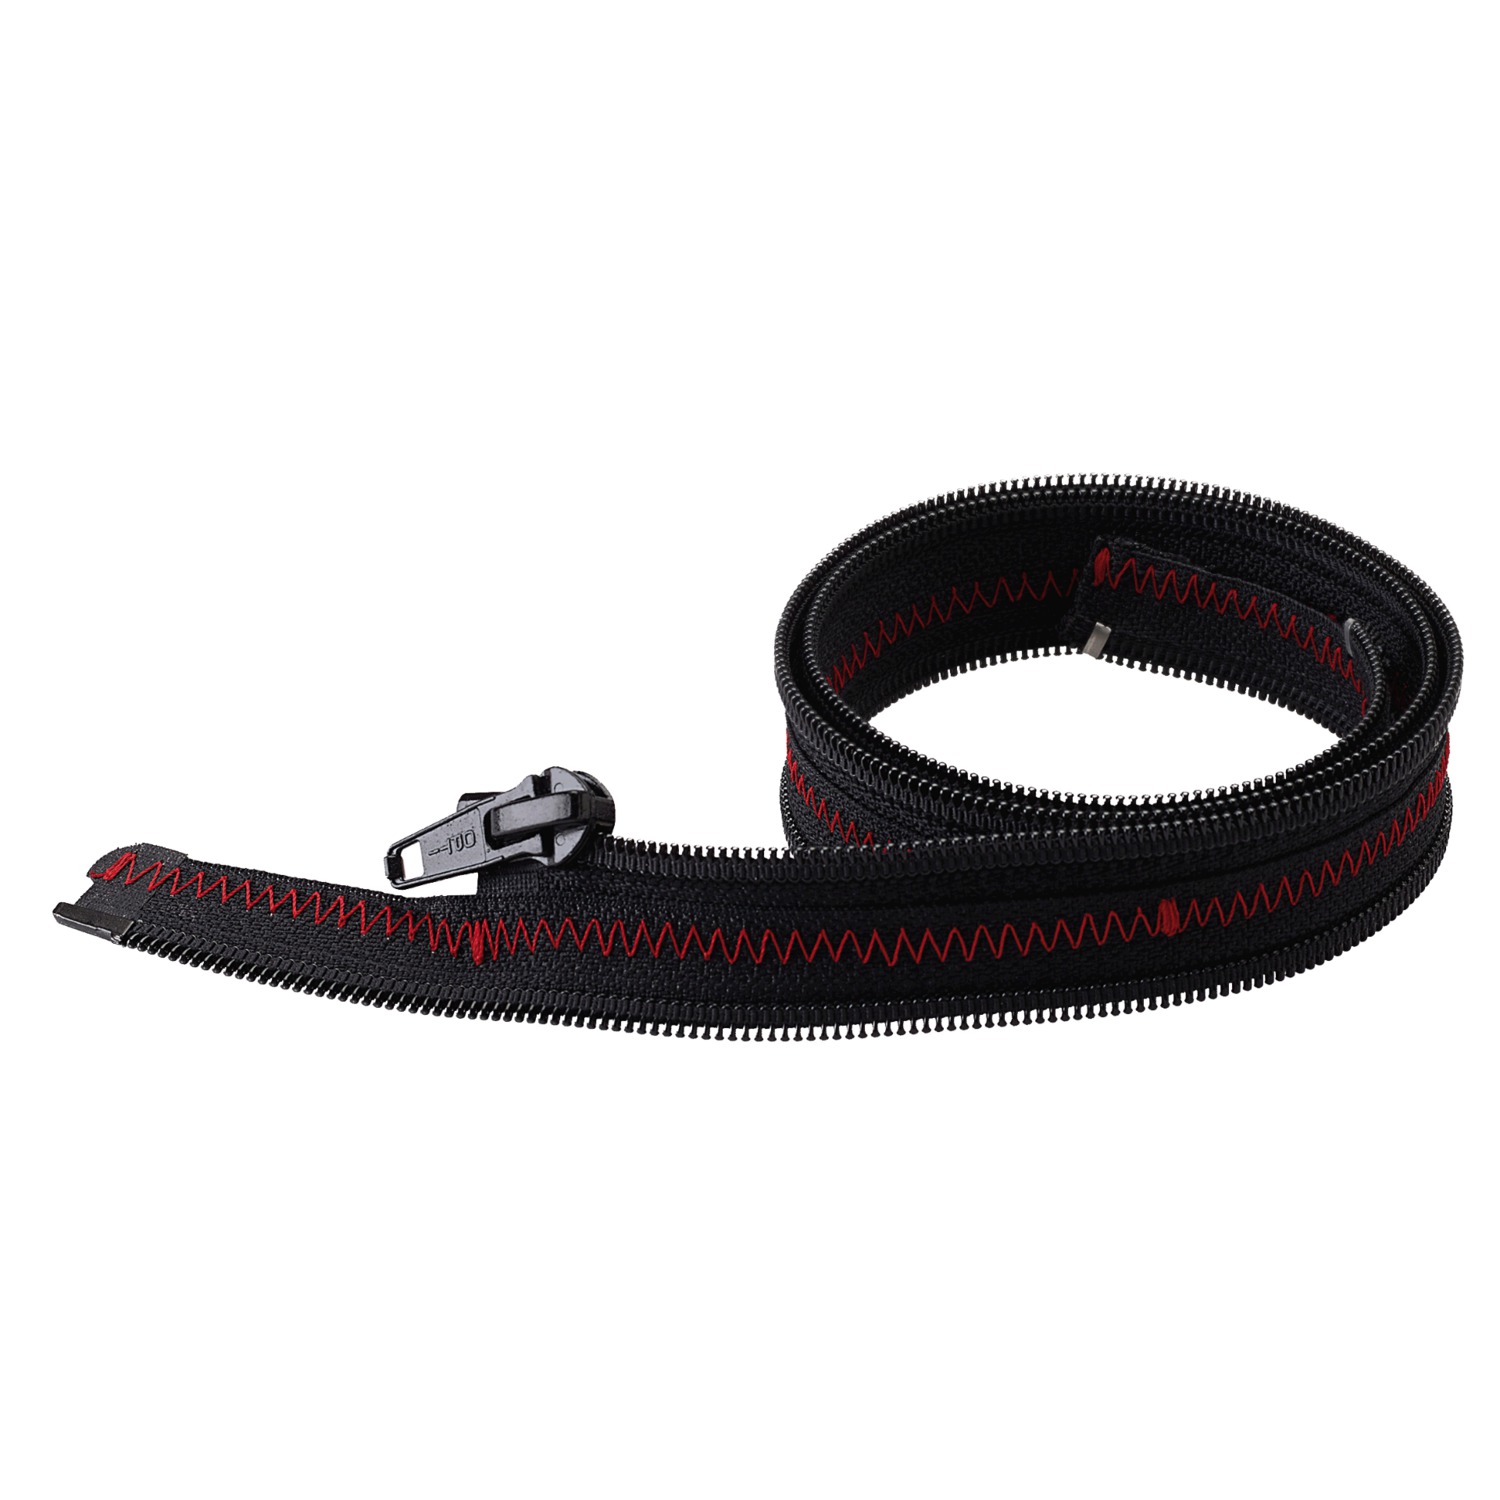 Obrázek produktu propojovací mezikus bundy a kalhot SJ-LP LEATHER CONNECTION, SPIDI (černá/červená) V89-021